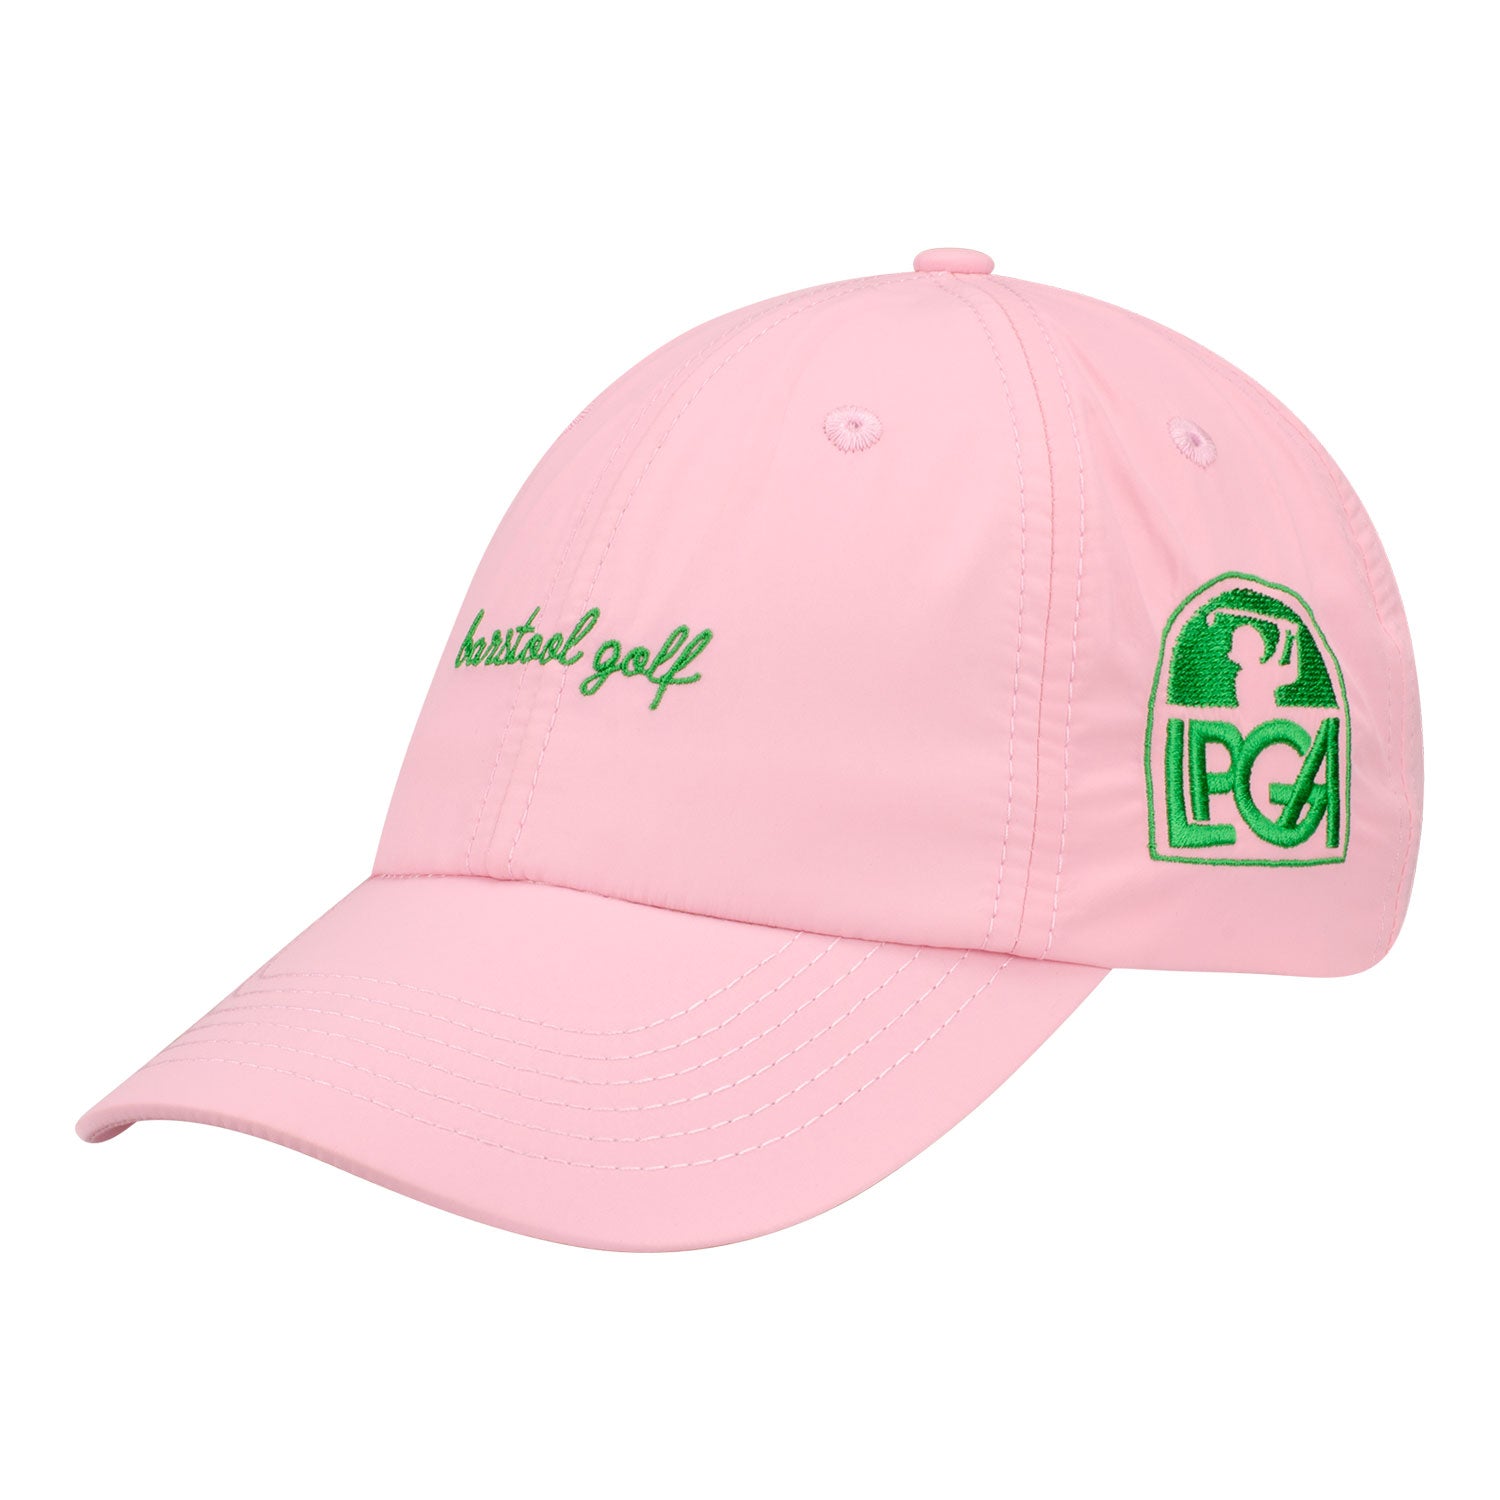 Barstool Golf LPGA Women's Hat - Angled Left Side View